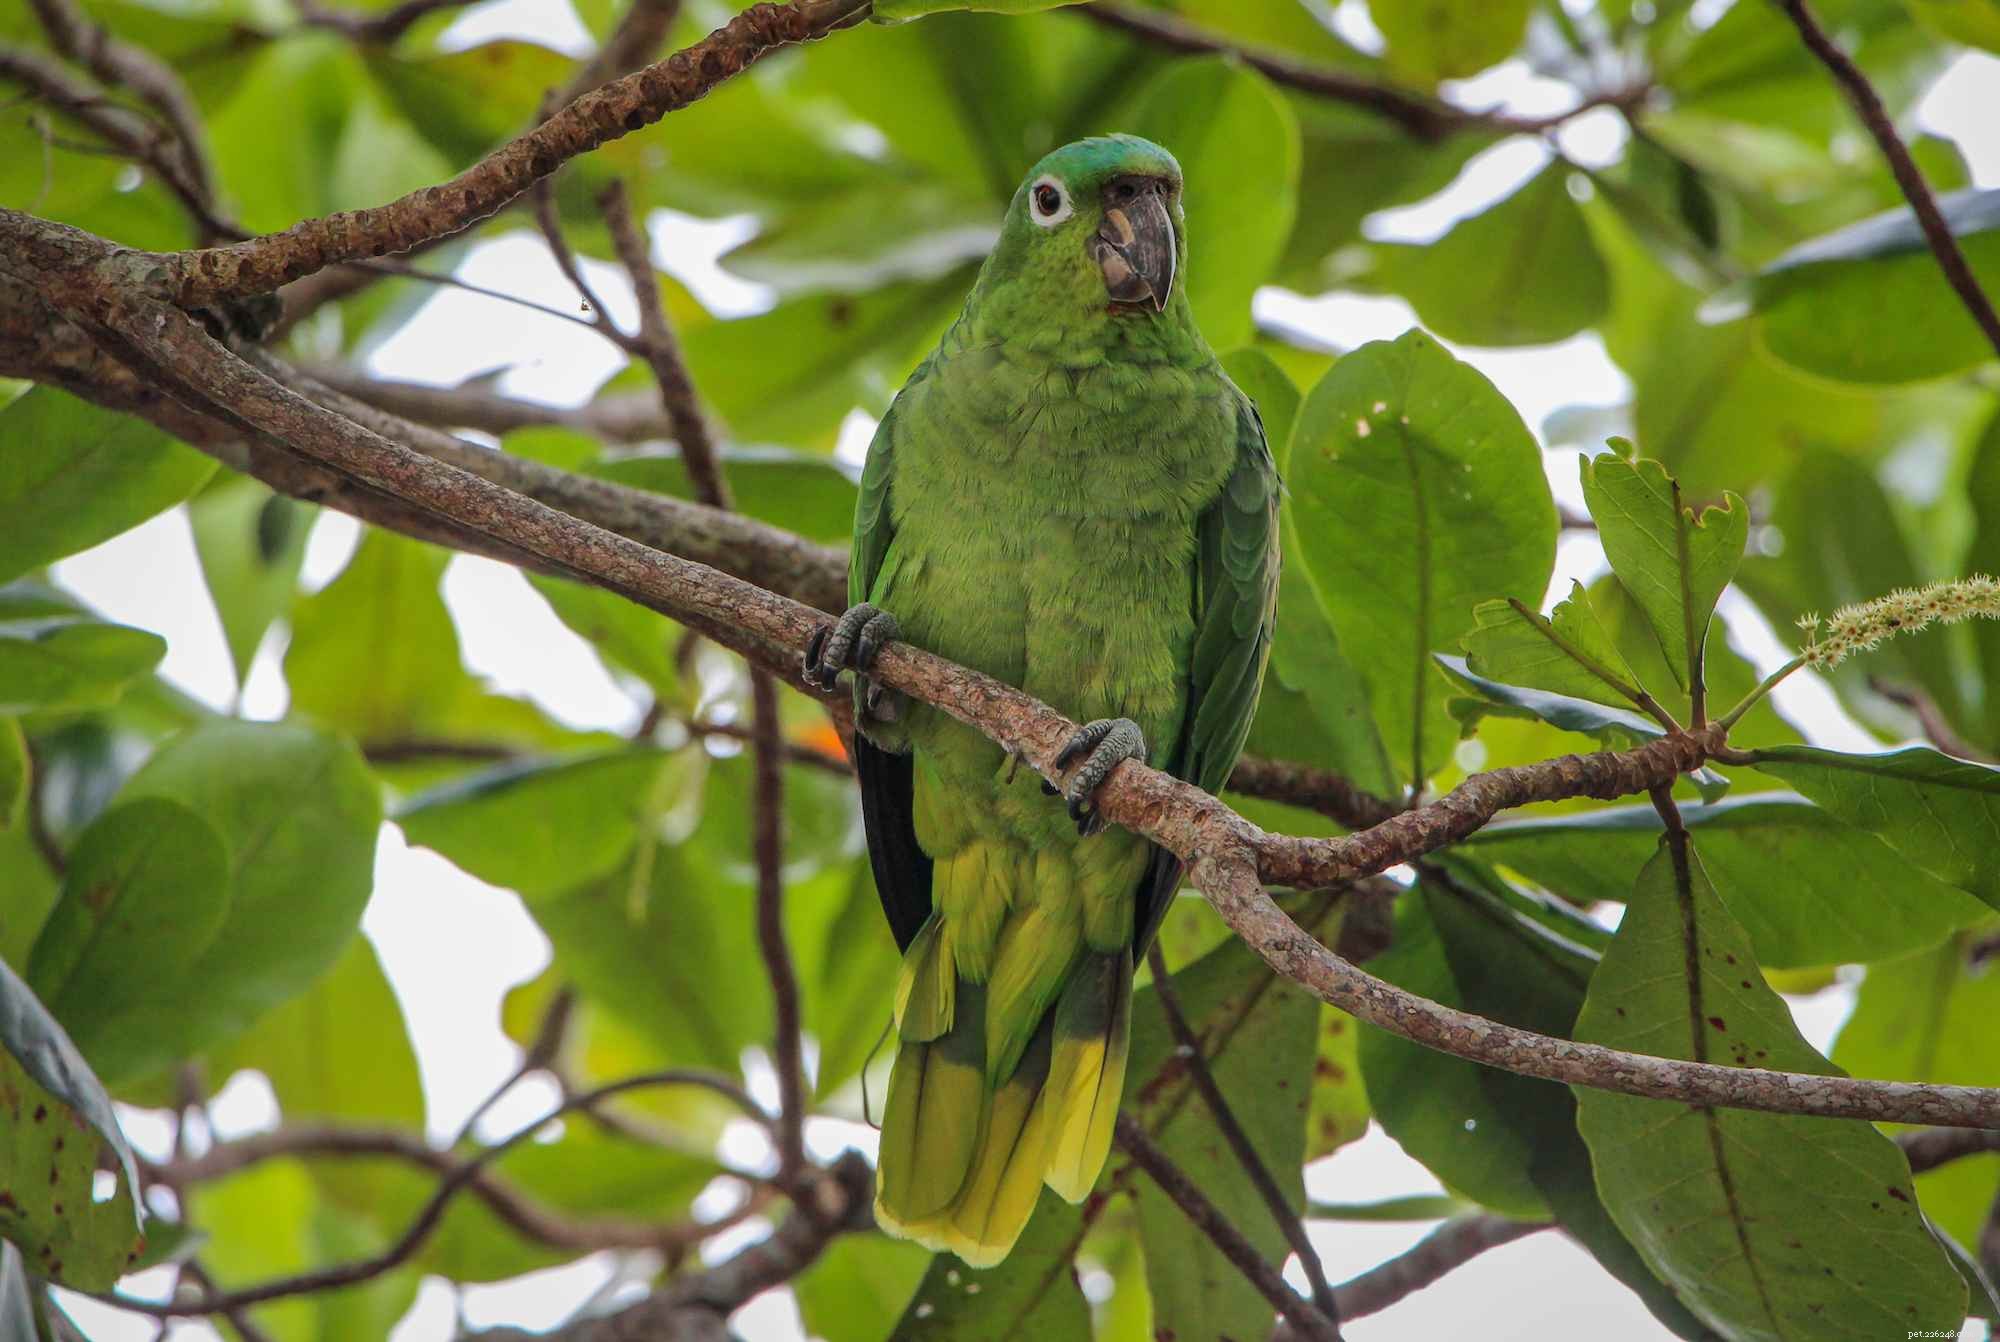 Мучнистый амазонский попугай:профиль видов птиц